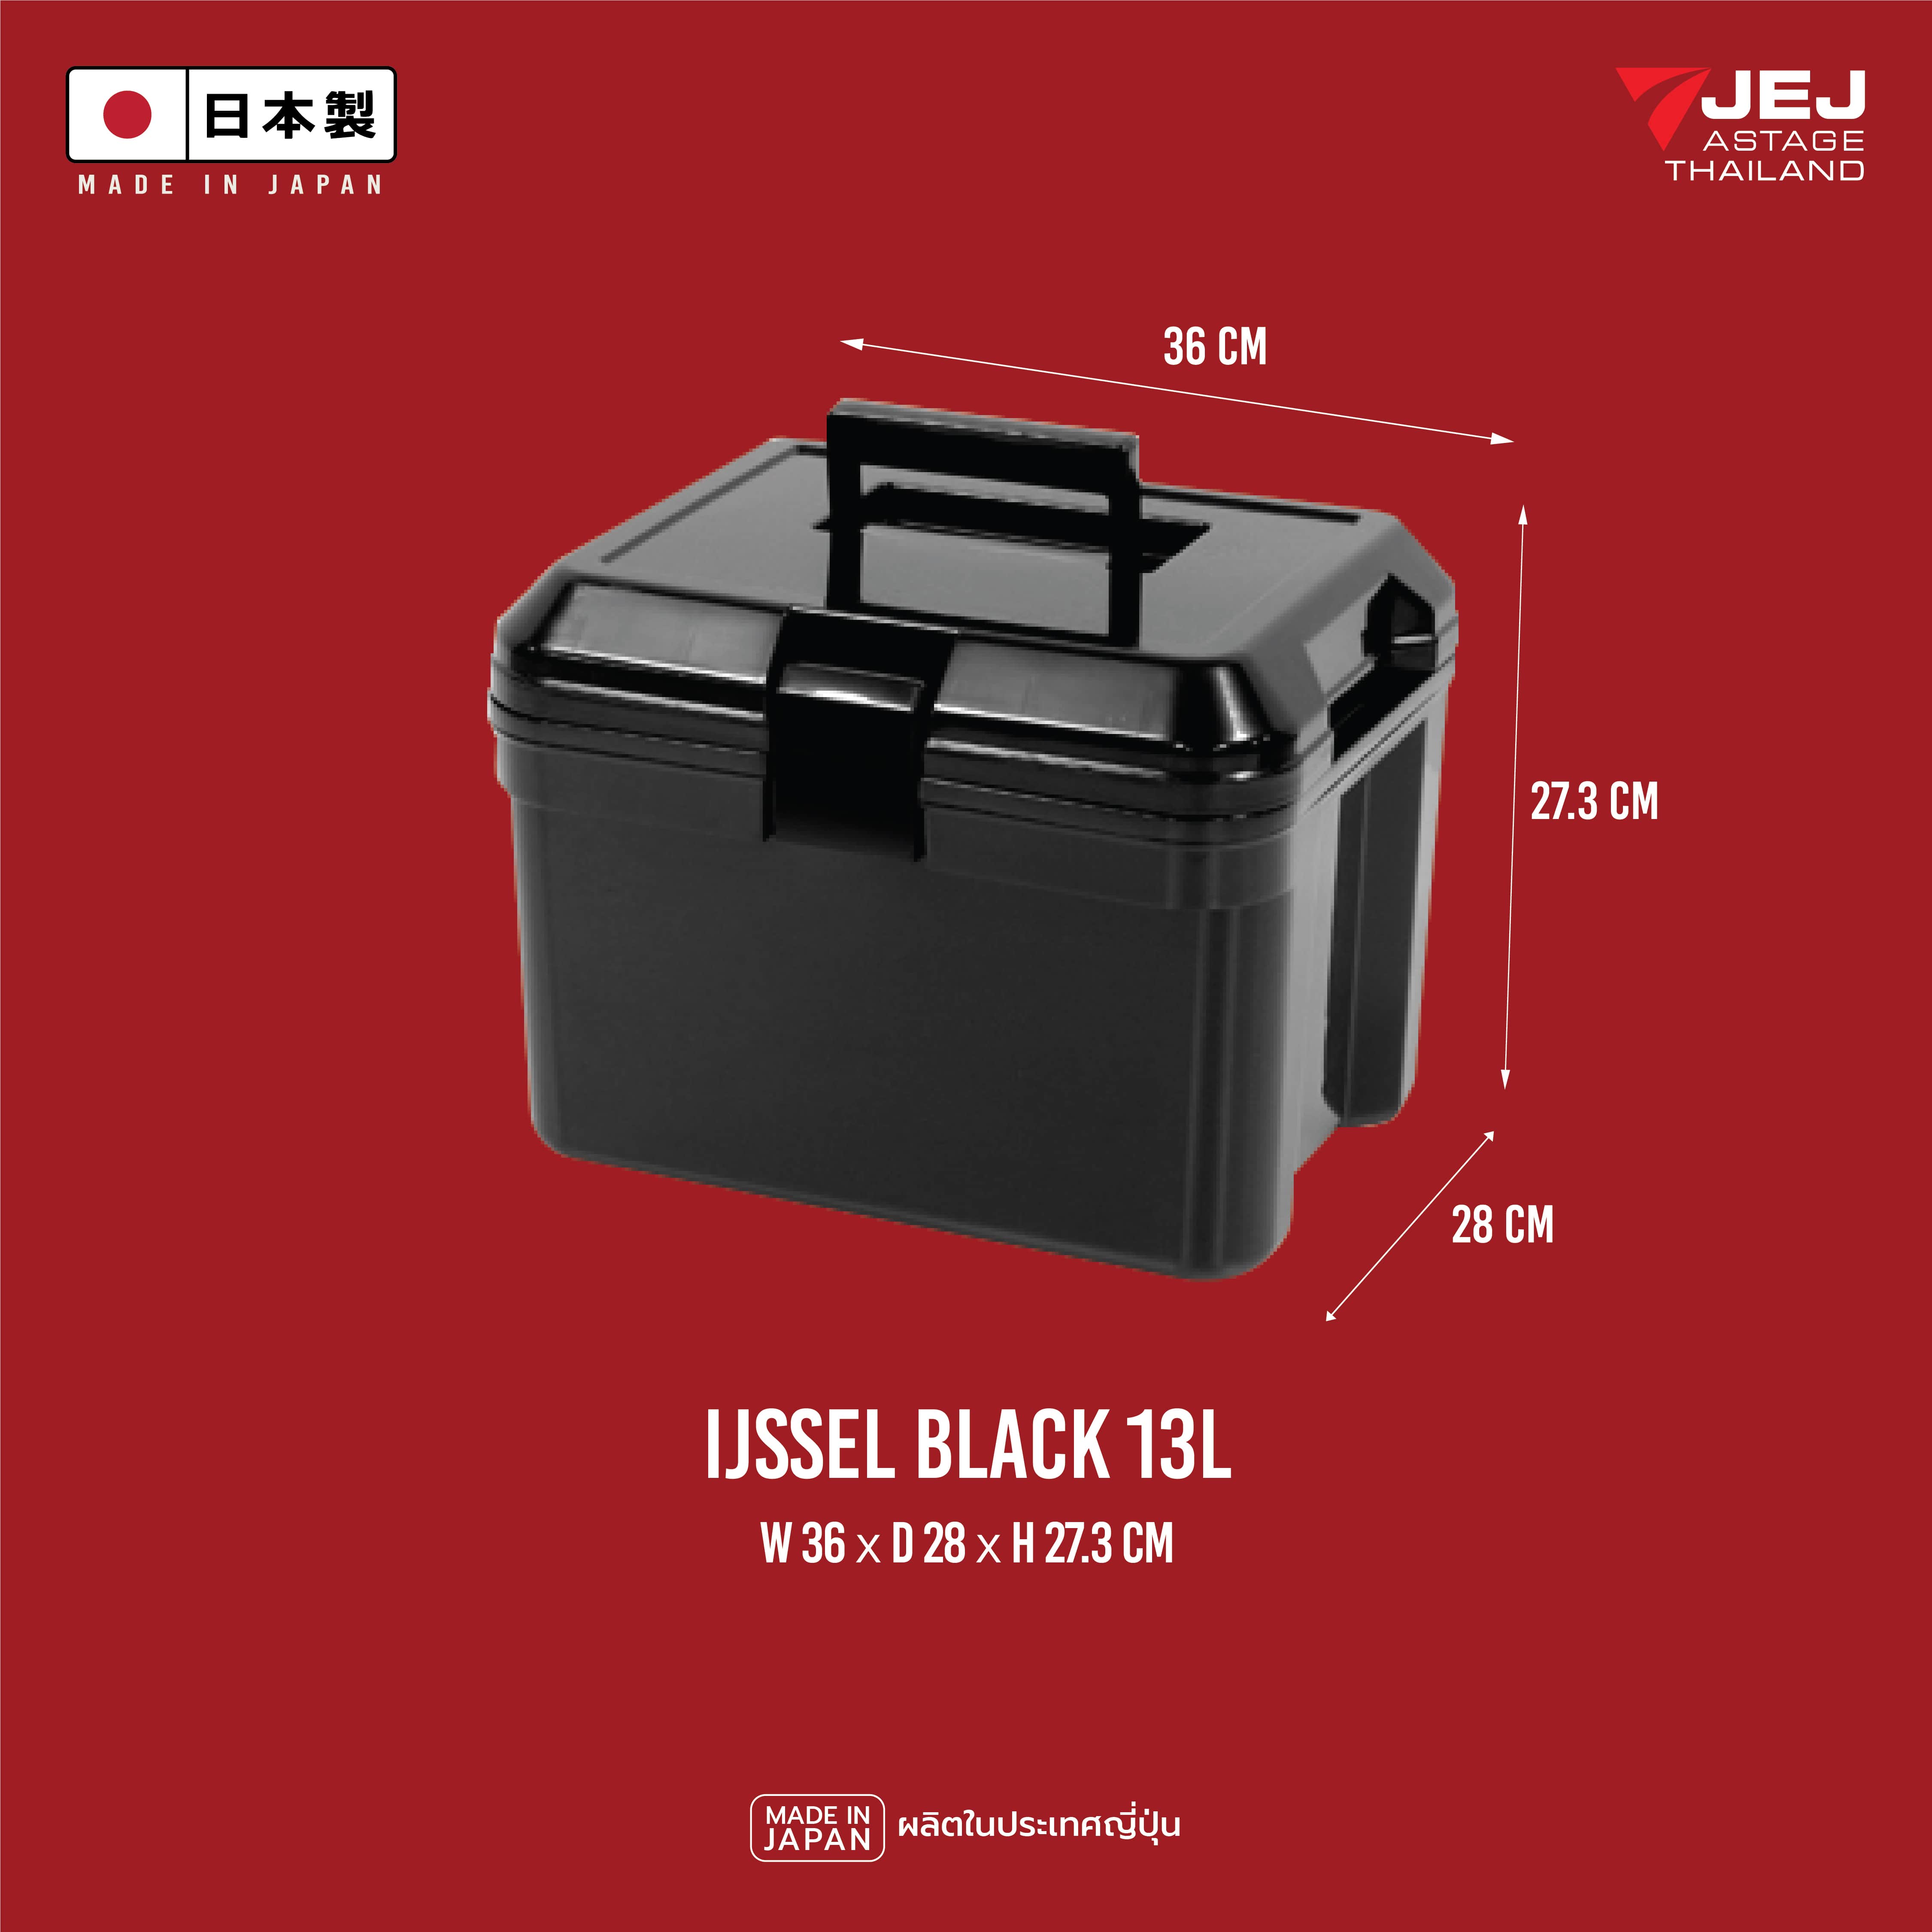 มุมมองเพิ่มเติมของสินค้า JEJ ASTAGE (Made in Japan) กระติกเก็บความเย็น (13L)